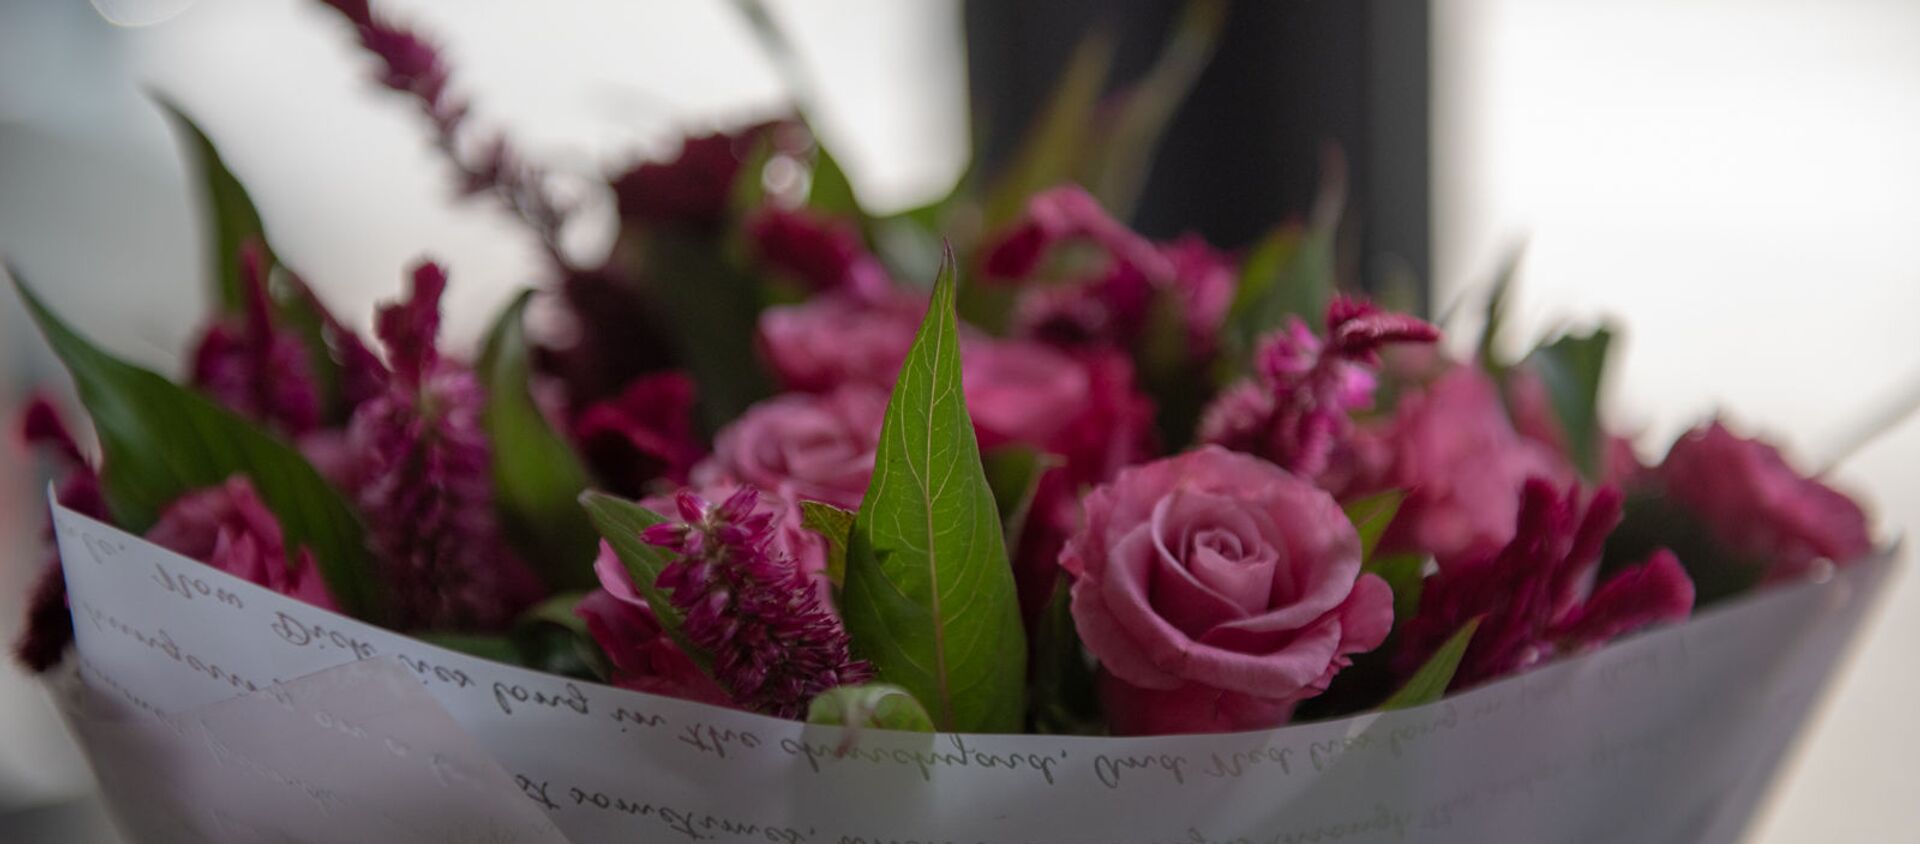 Букет цветов в цветочном магазине Мариам Мартиросян - Sputnik Արմենիա, 1920, 07.04.2021